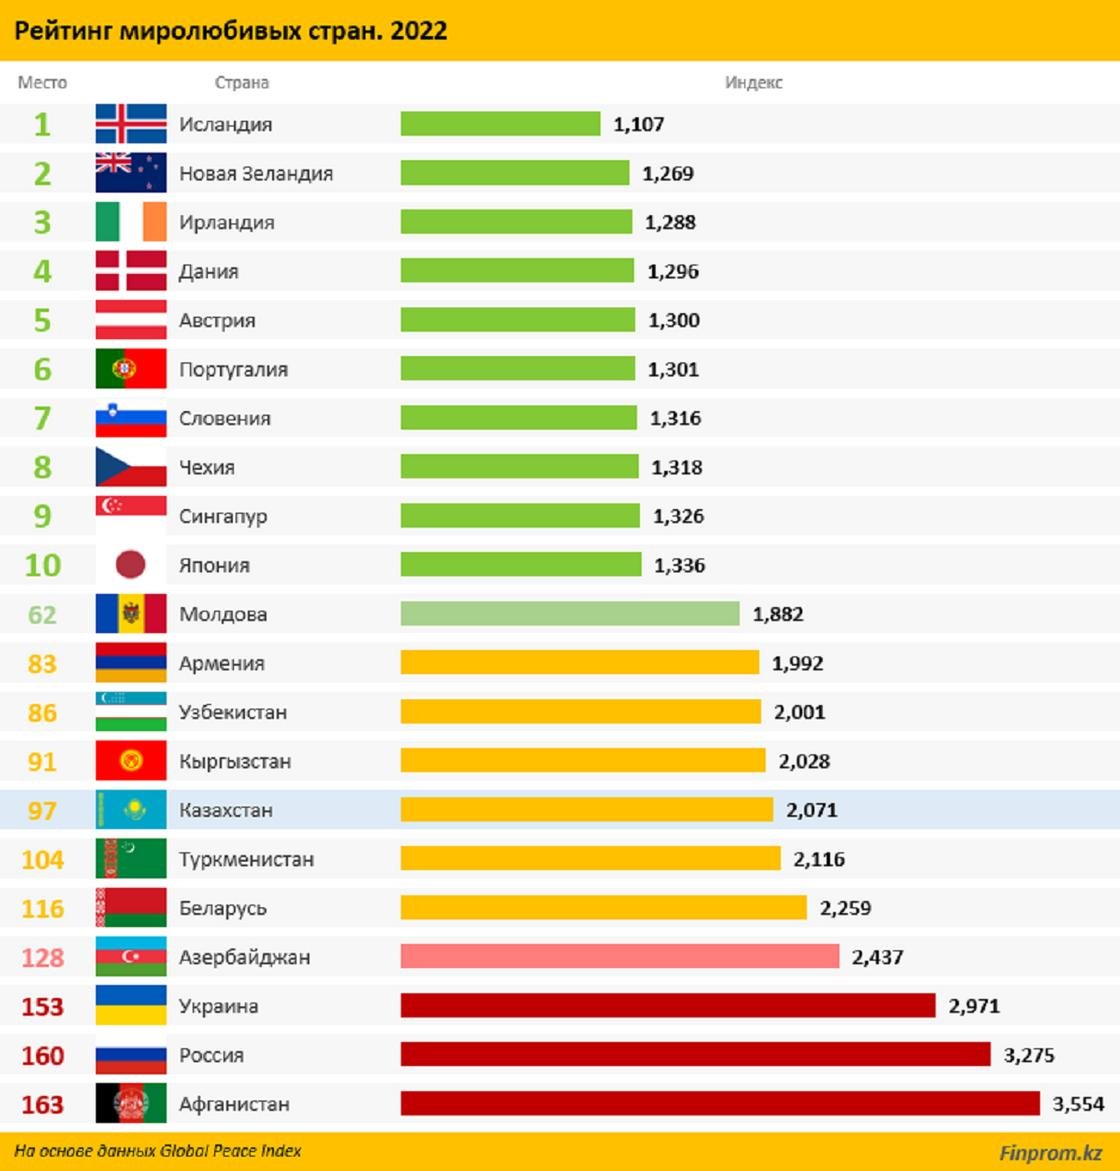 Экономика стран 2022. Мировые рейтинги стран. Топ стран. Самые популярные страны. Список стран по дейтинг.